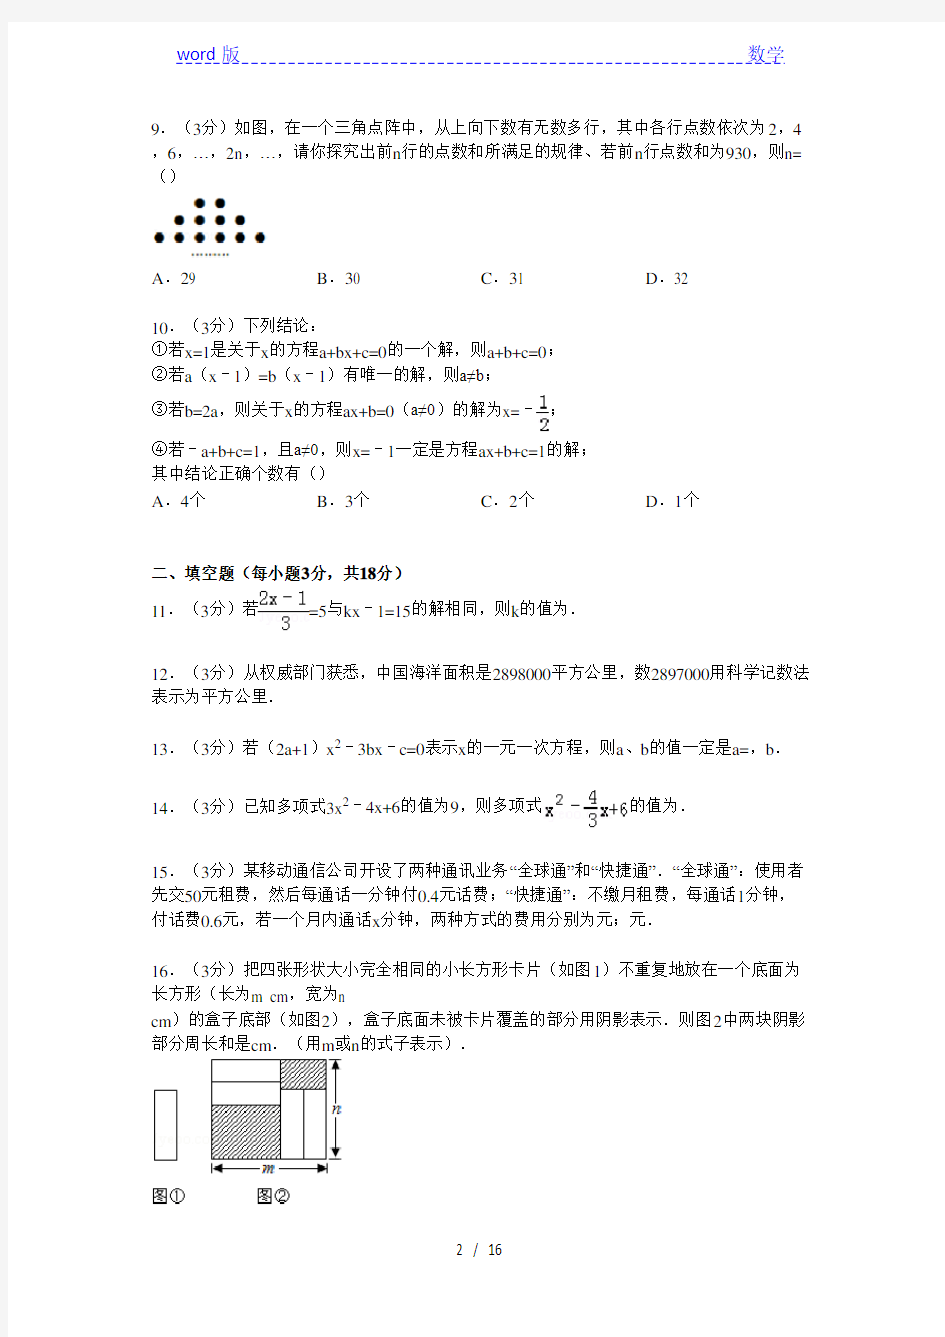 【解析版】武汉市部分学校2014-2015年七年级上12月月考试卷